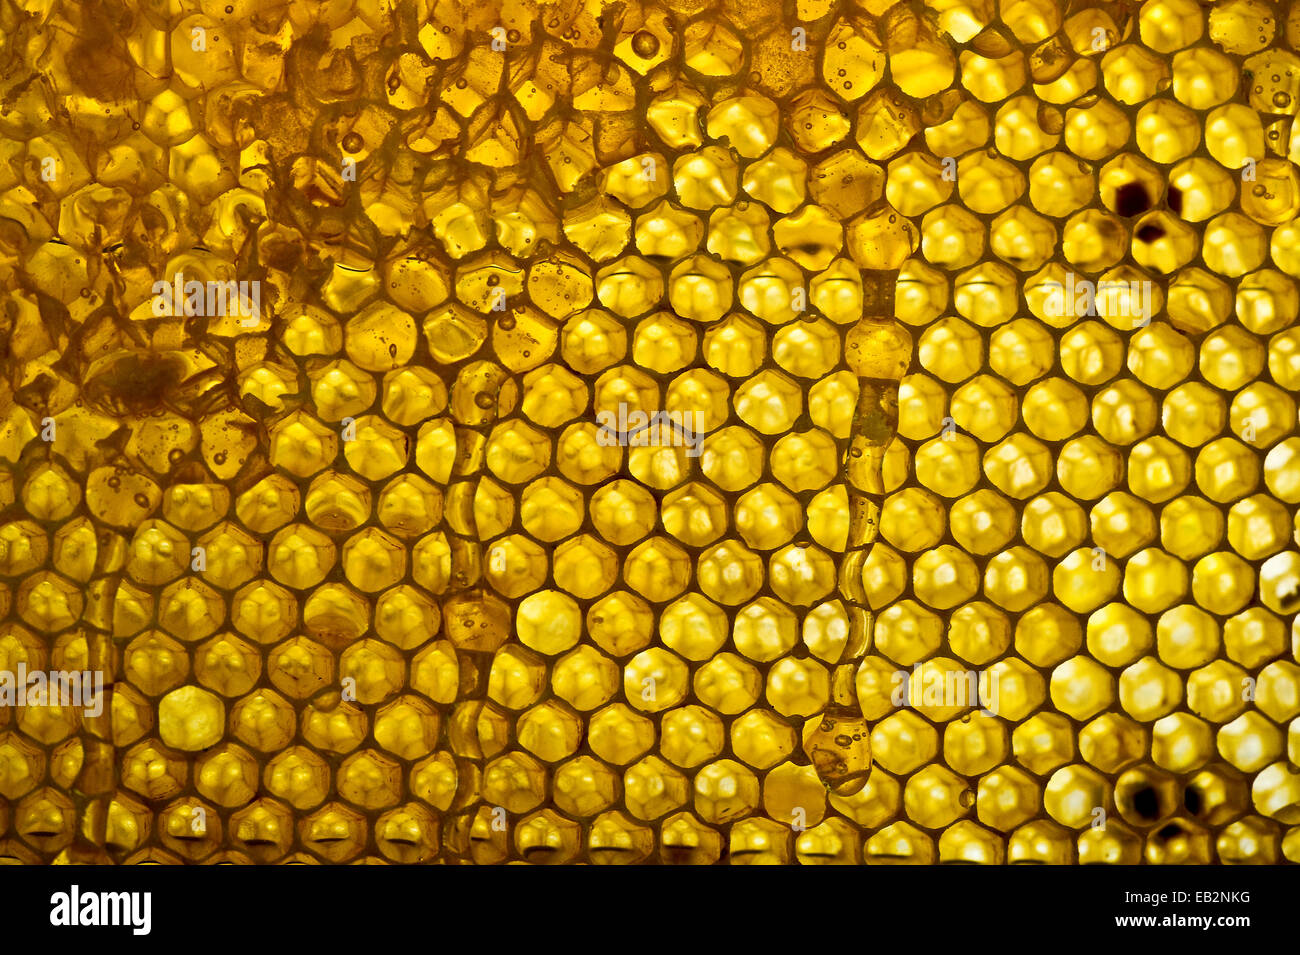 Honeycomb and honey, Germany Stock Photo